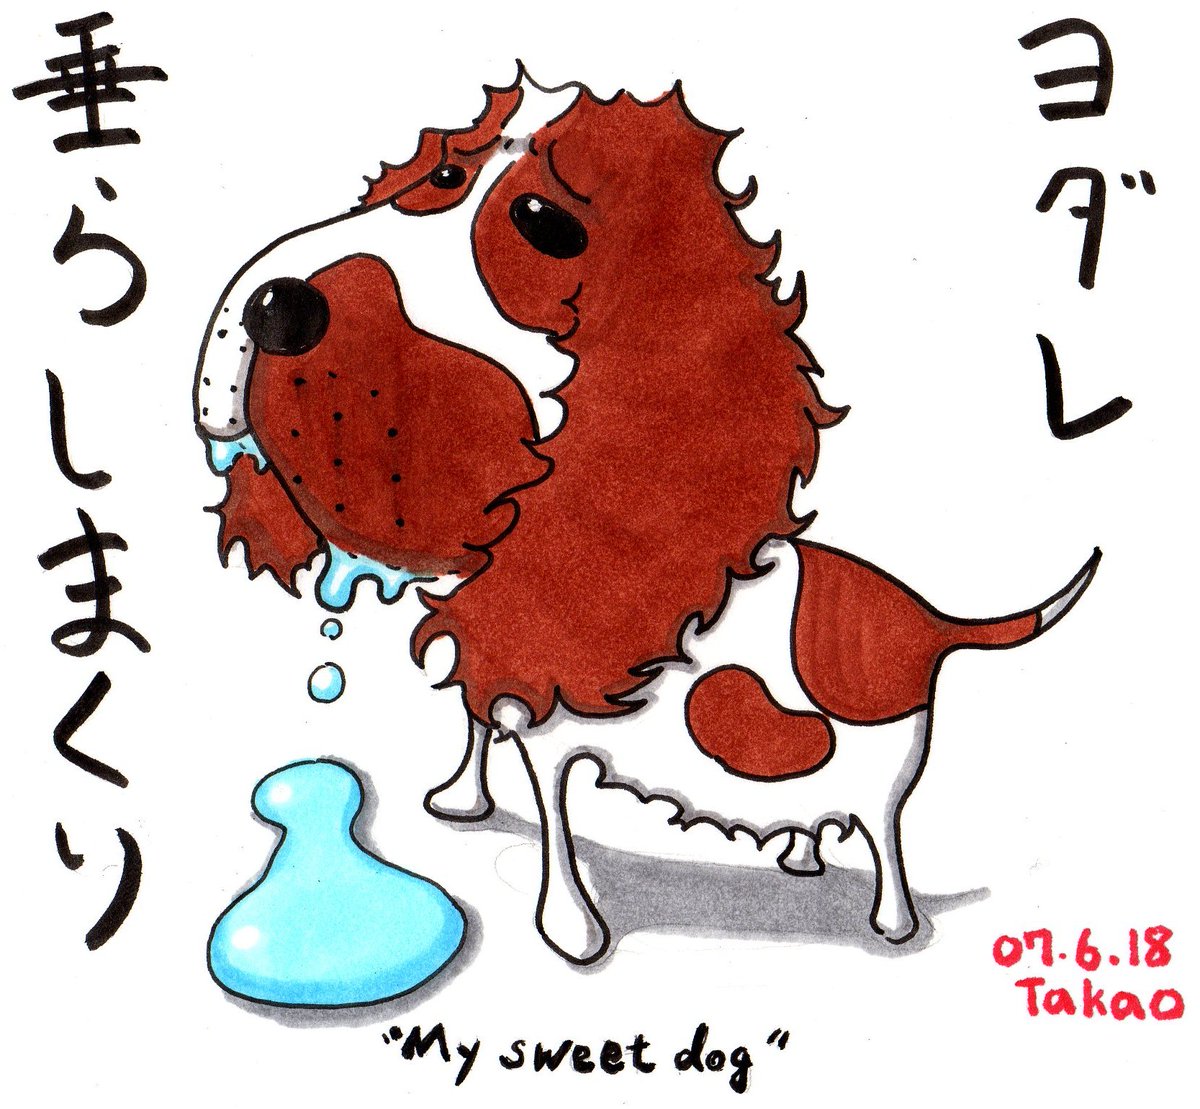 毎日何かを描くって難しい。
2007年の過去作
コピックで描いた犬のイラストです。
#イラスト 